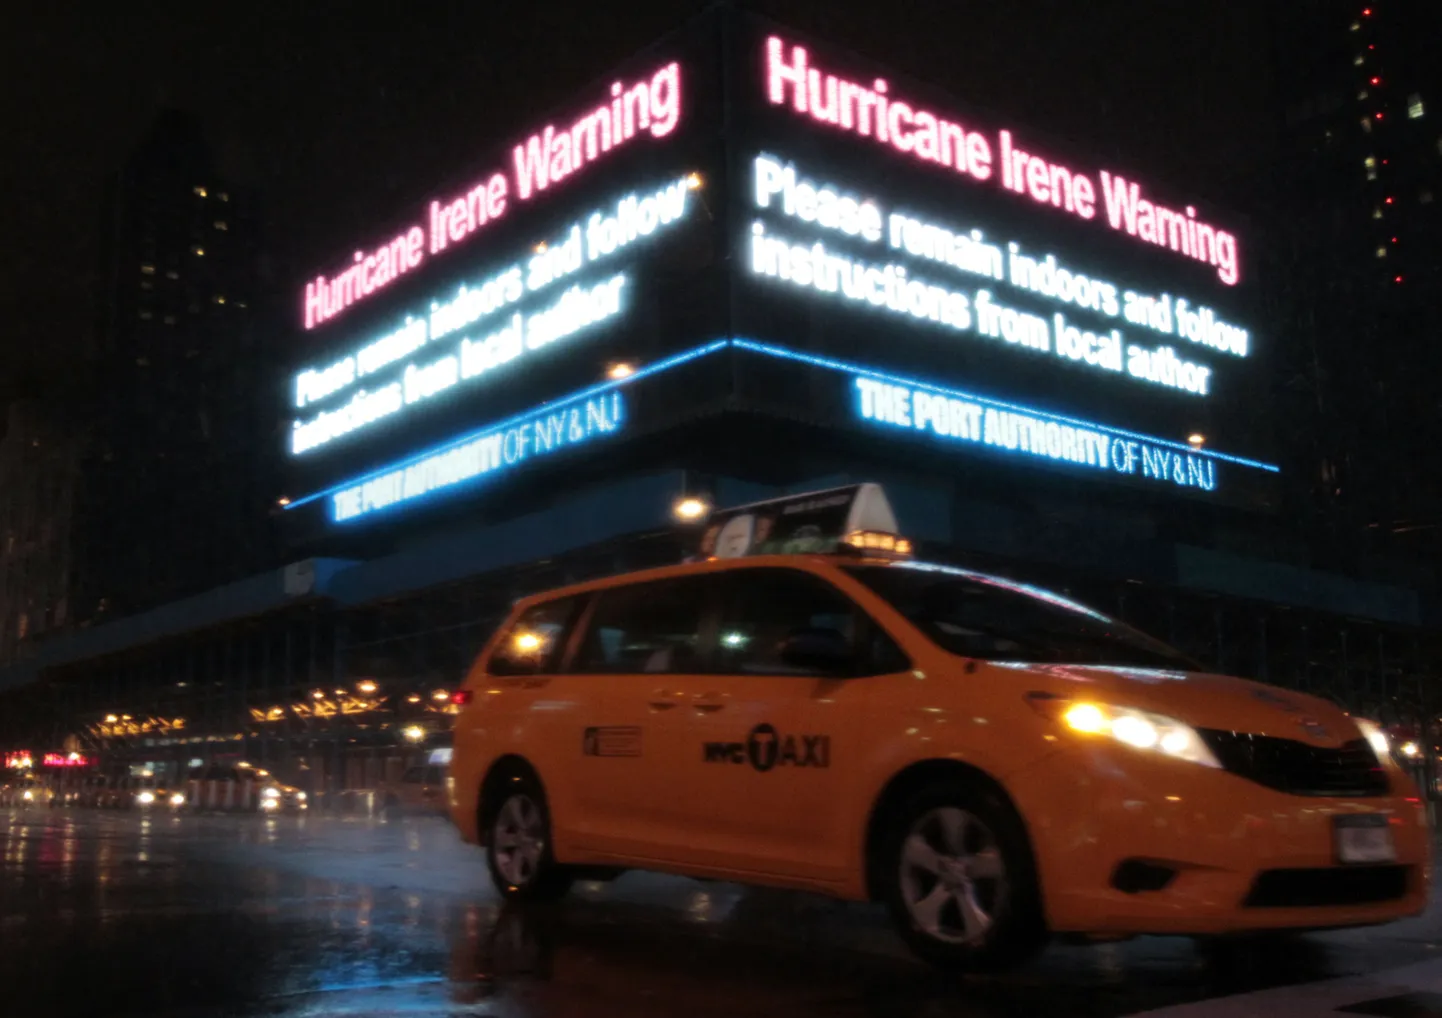 Orkaani Irene eest hoiatav teade valgusekraanil New York Citys.